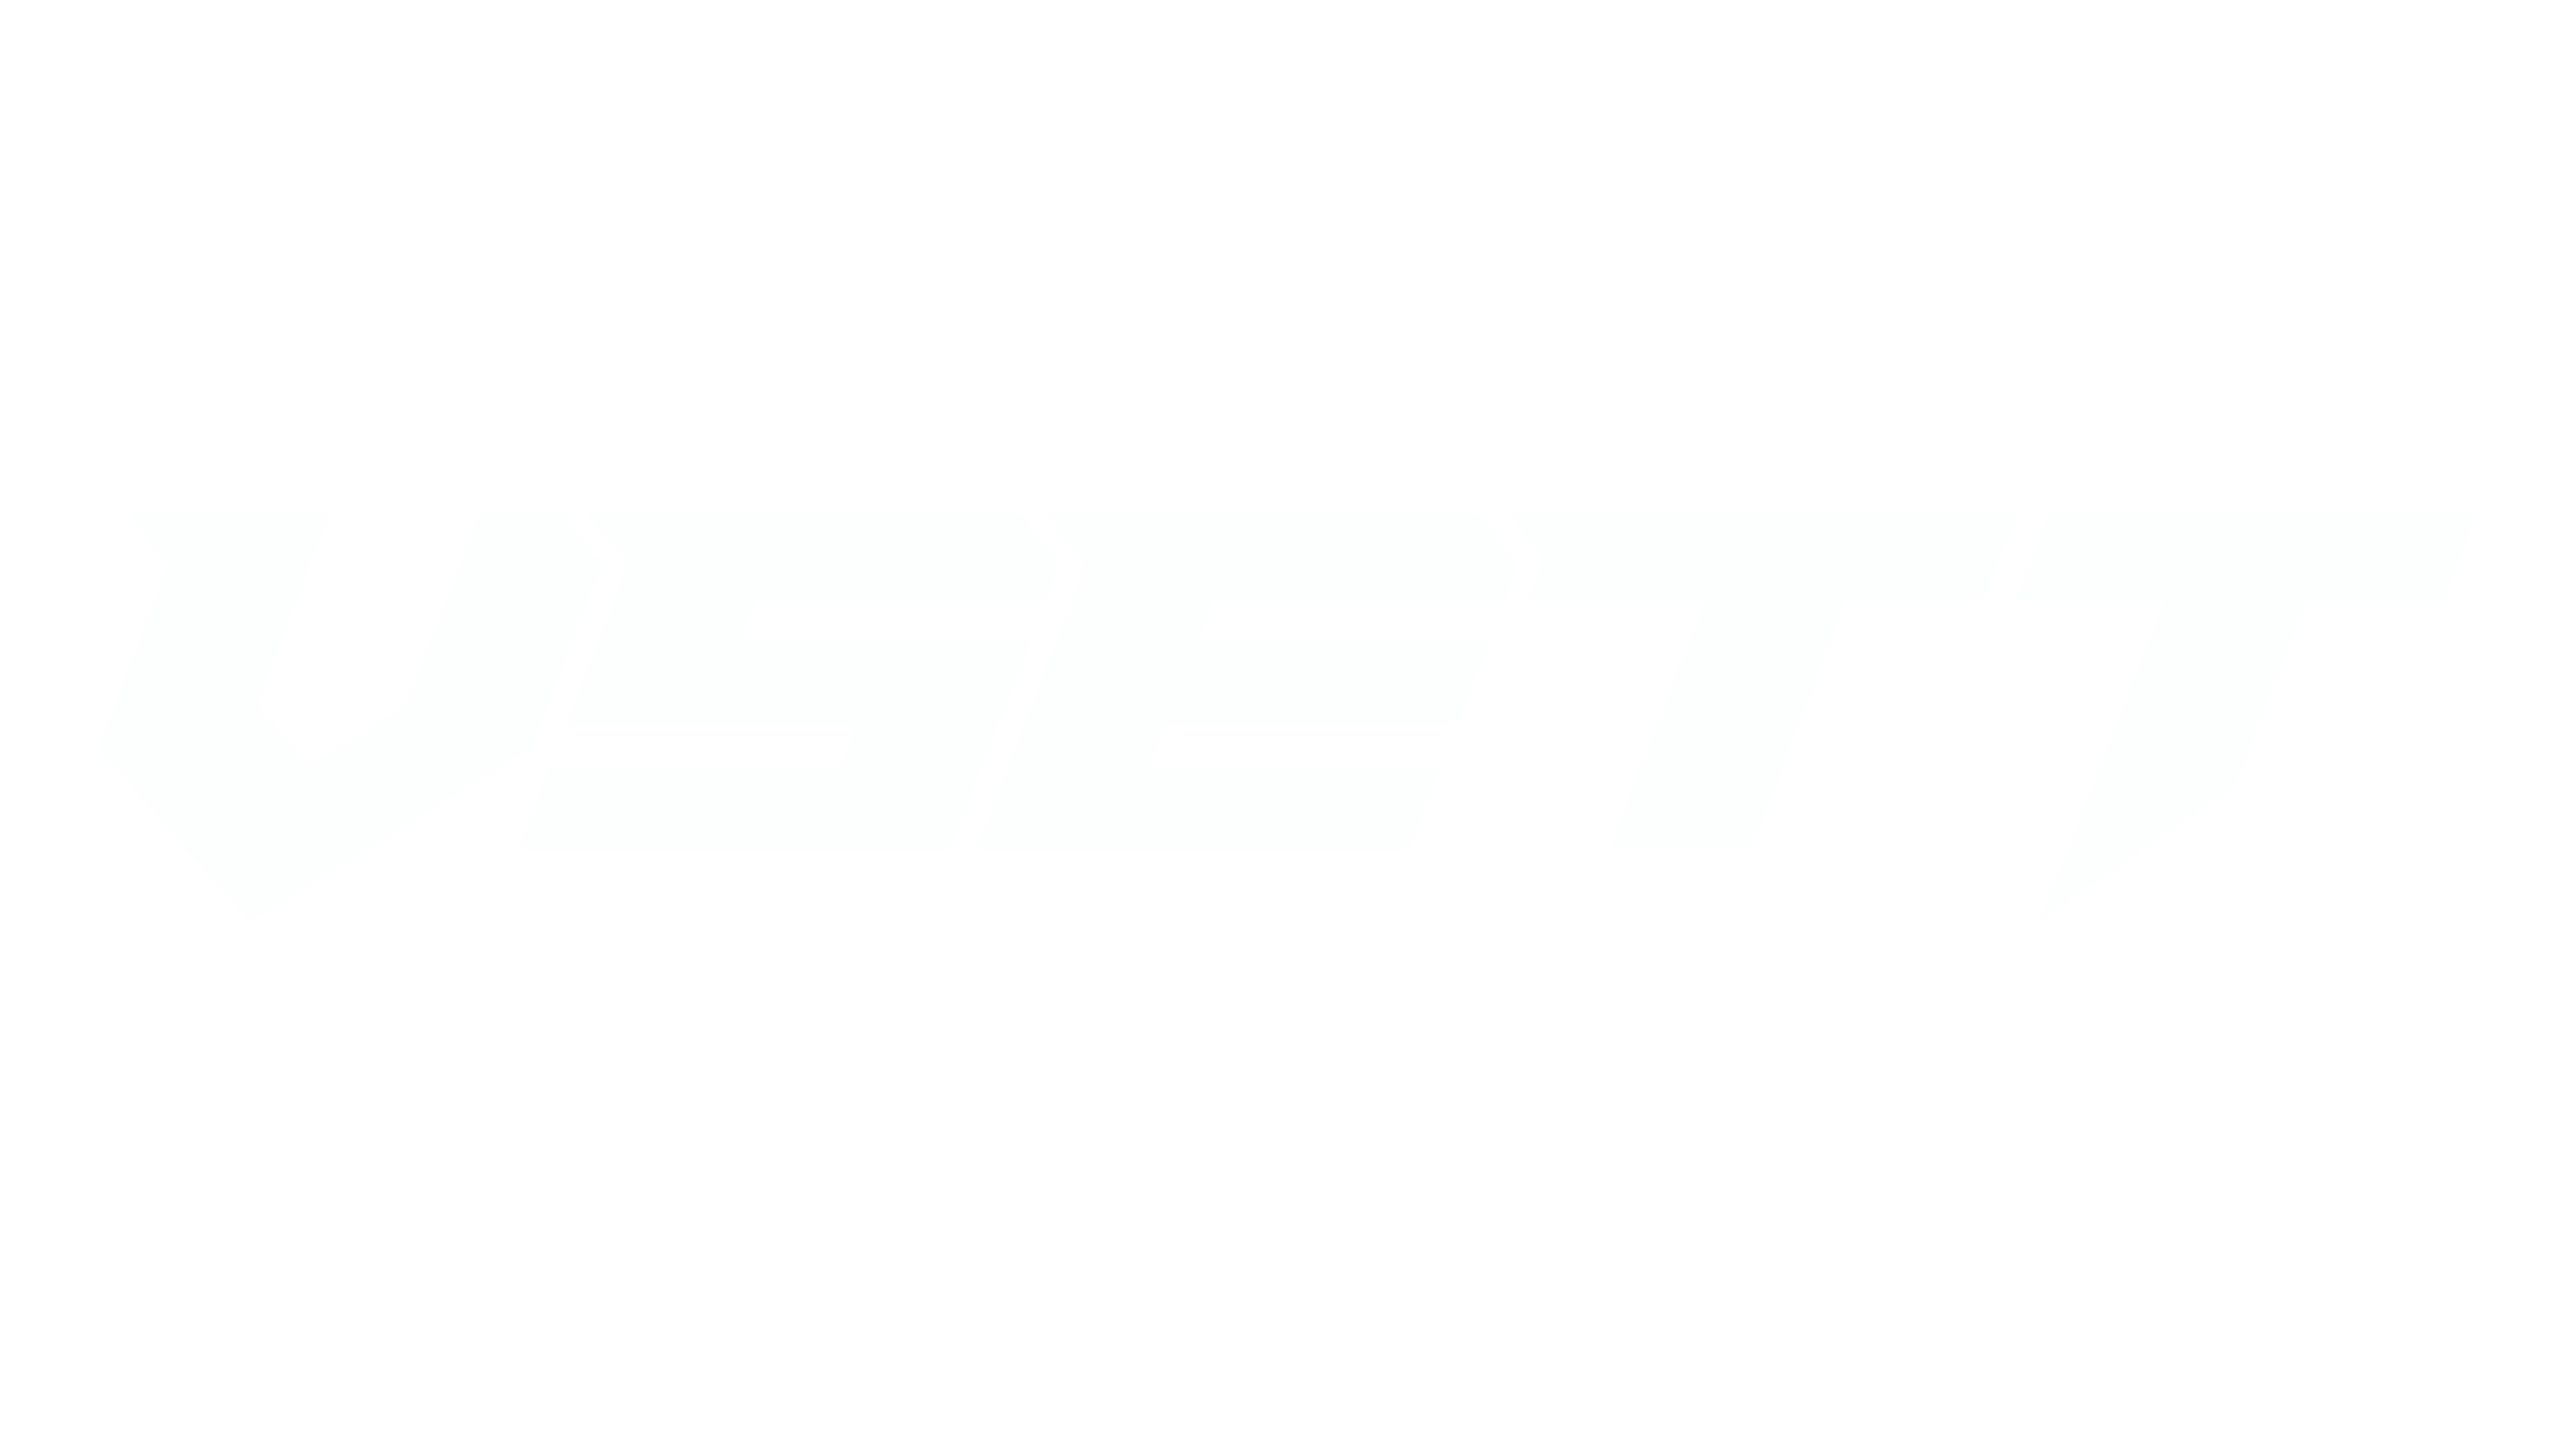 VSETT Electric Scooter White Transparent Logo